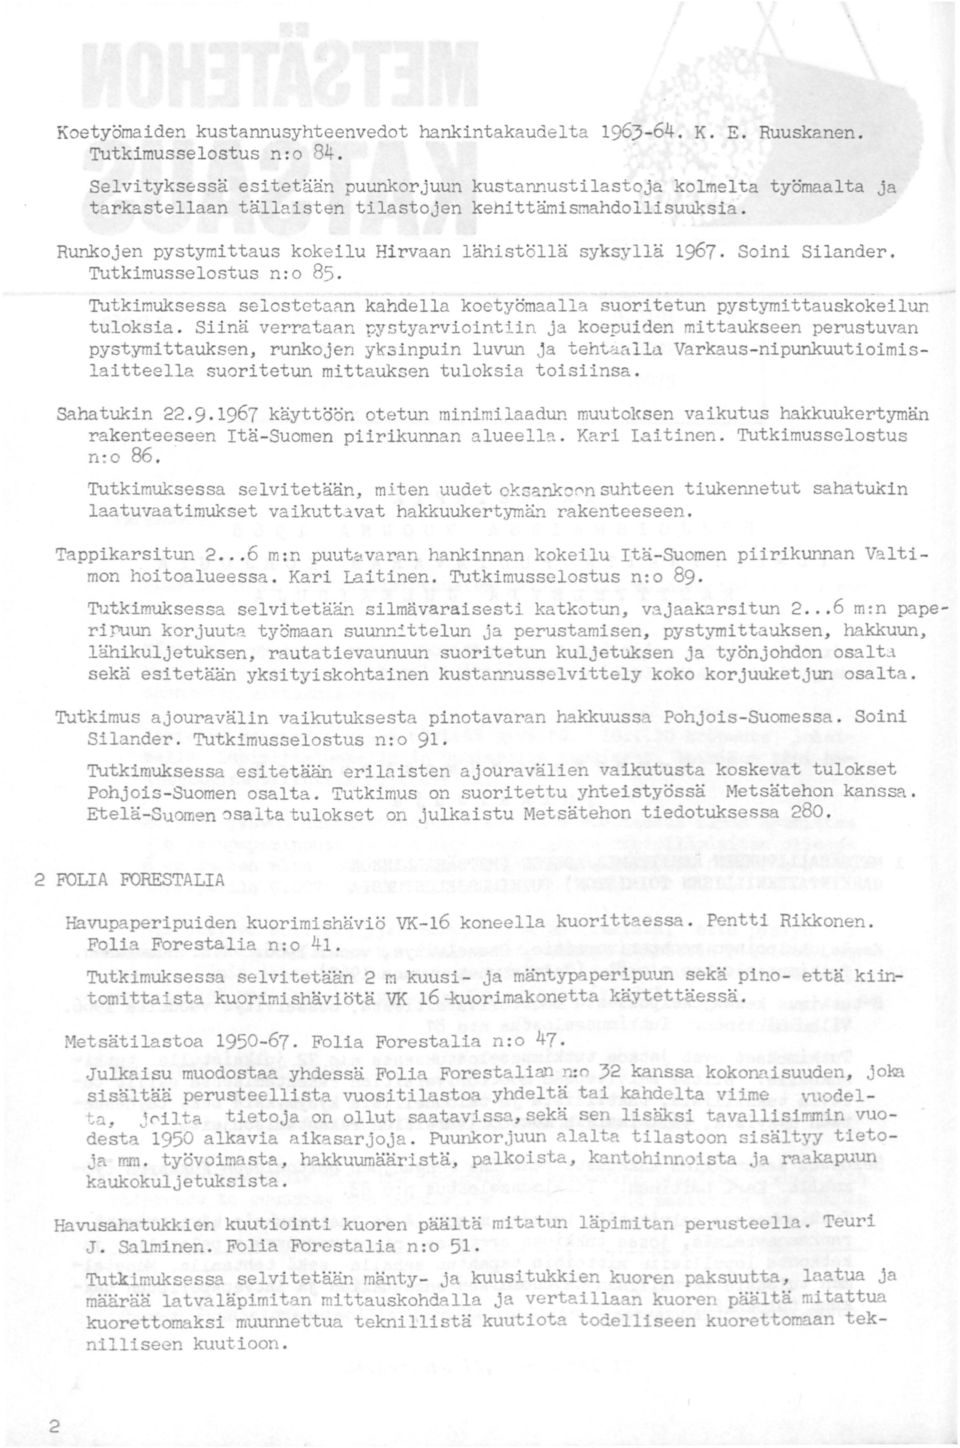 Runkojen pystymittaus koke ilu Hi rvaan lähistöllä syksyllä 1967. Soini Silander. Tutkimusselostus n : o 85. Tutkimuksessa selostetarn kahdella koetyömaalla suoritetun pystymittauskokeilun tuloksia.